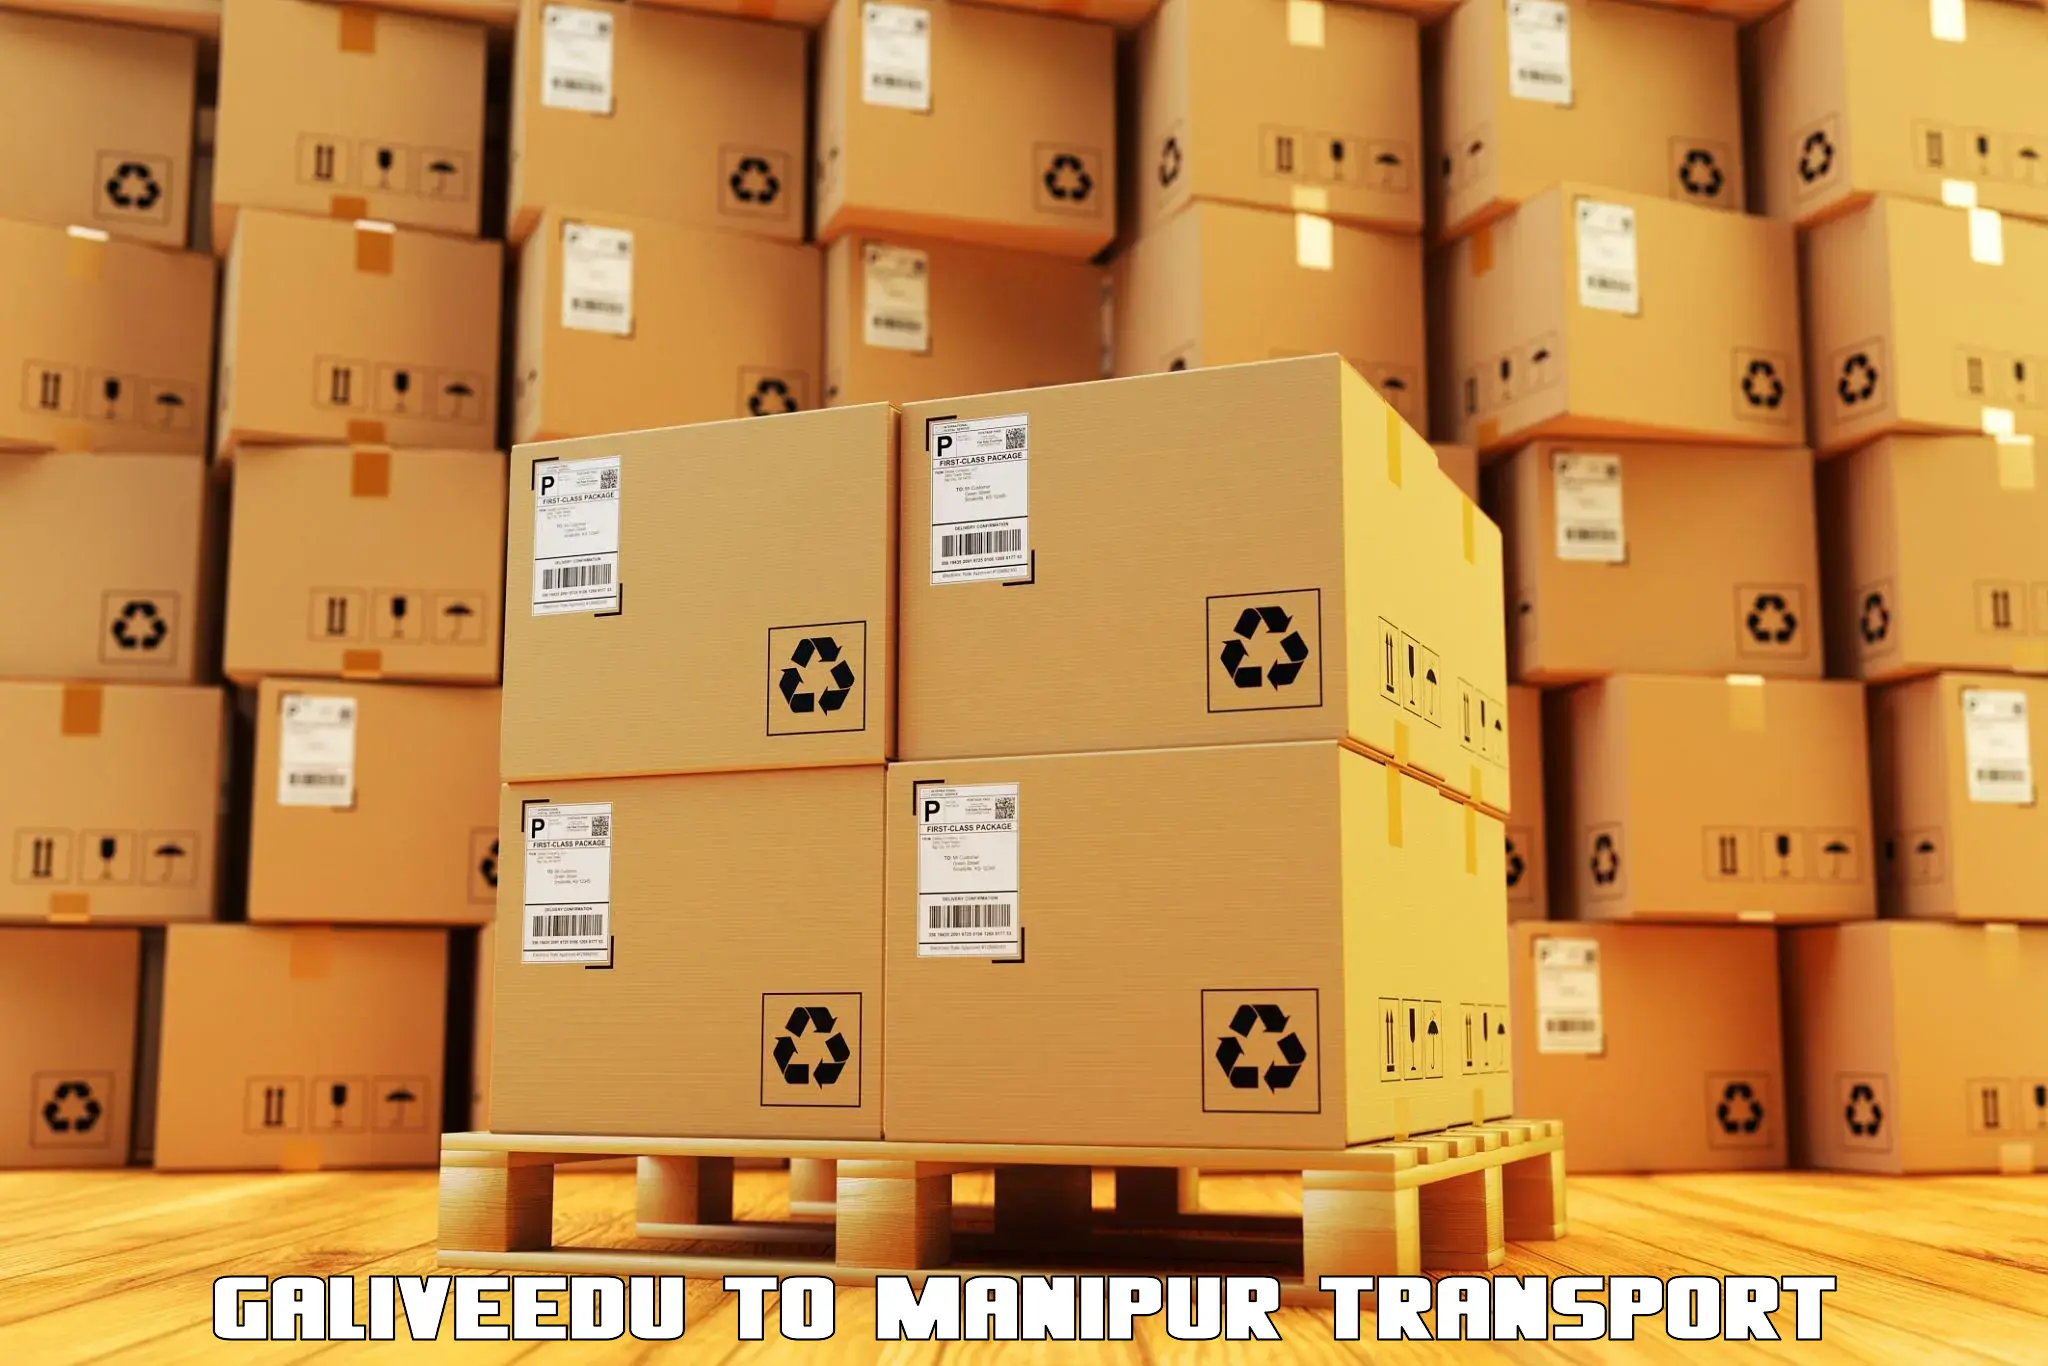 Online transport service Galiveedu to Manipur